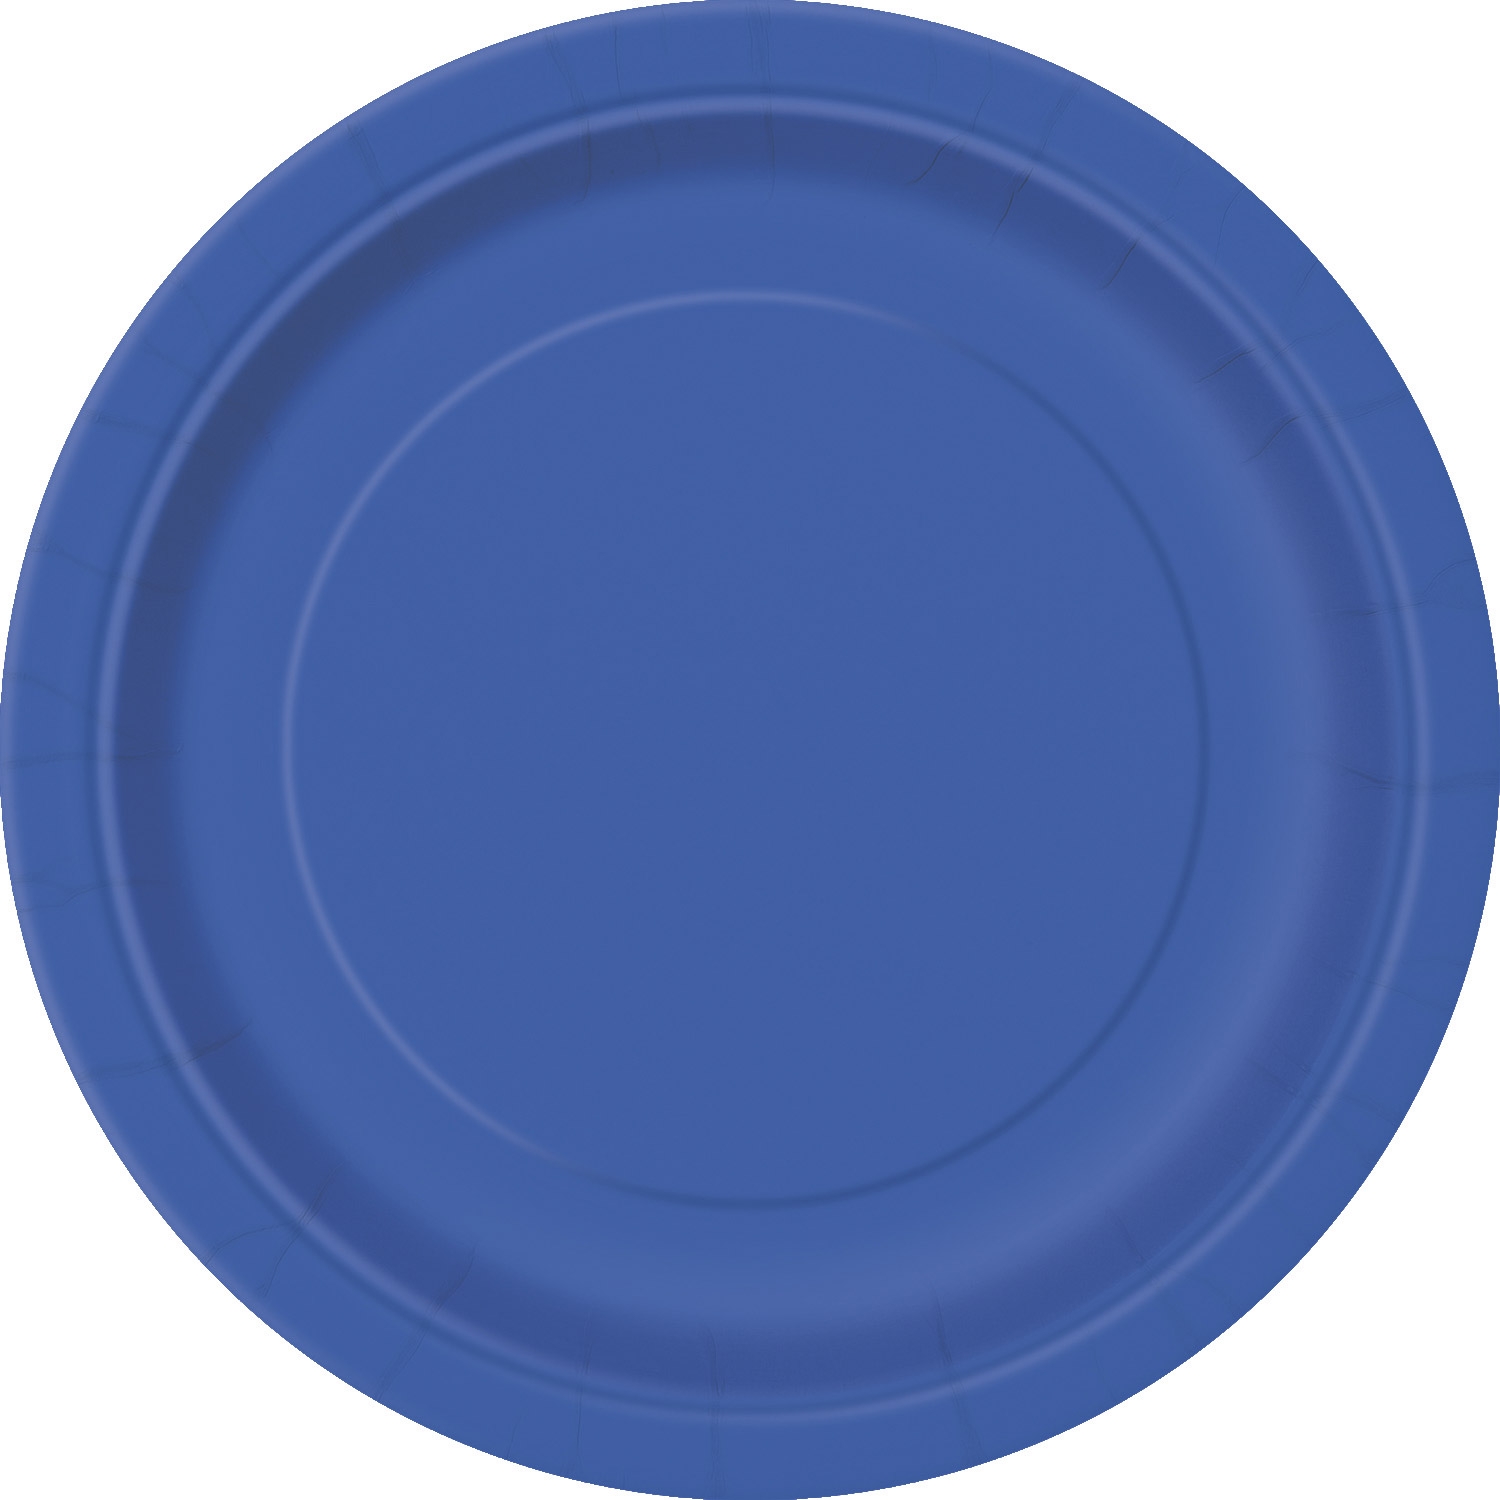 16 Grandes assiettes en carton bleues 23 cm accessoire